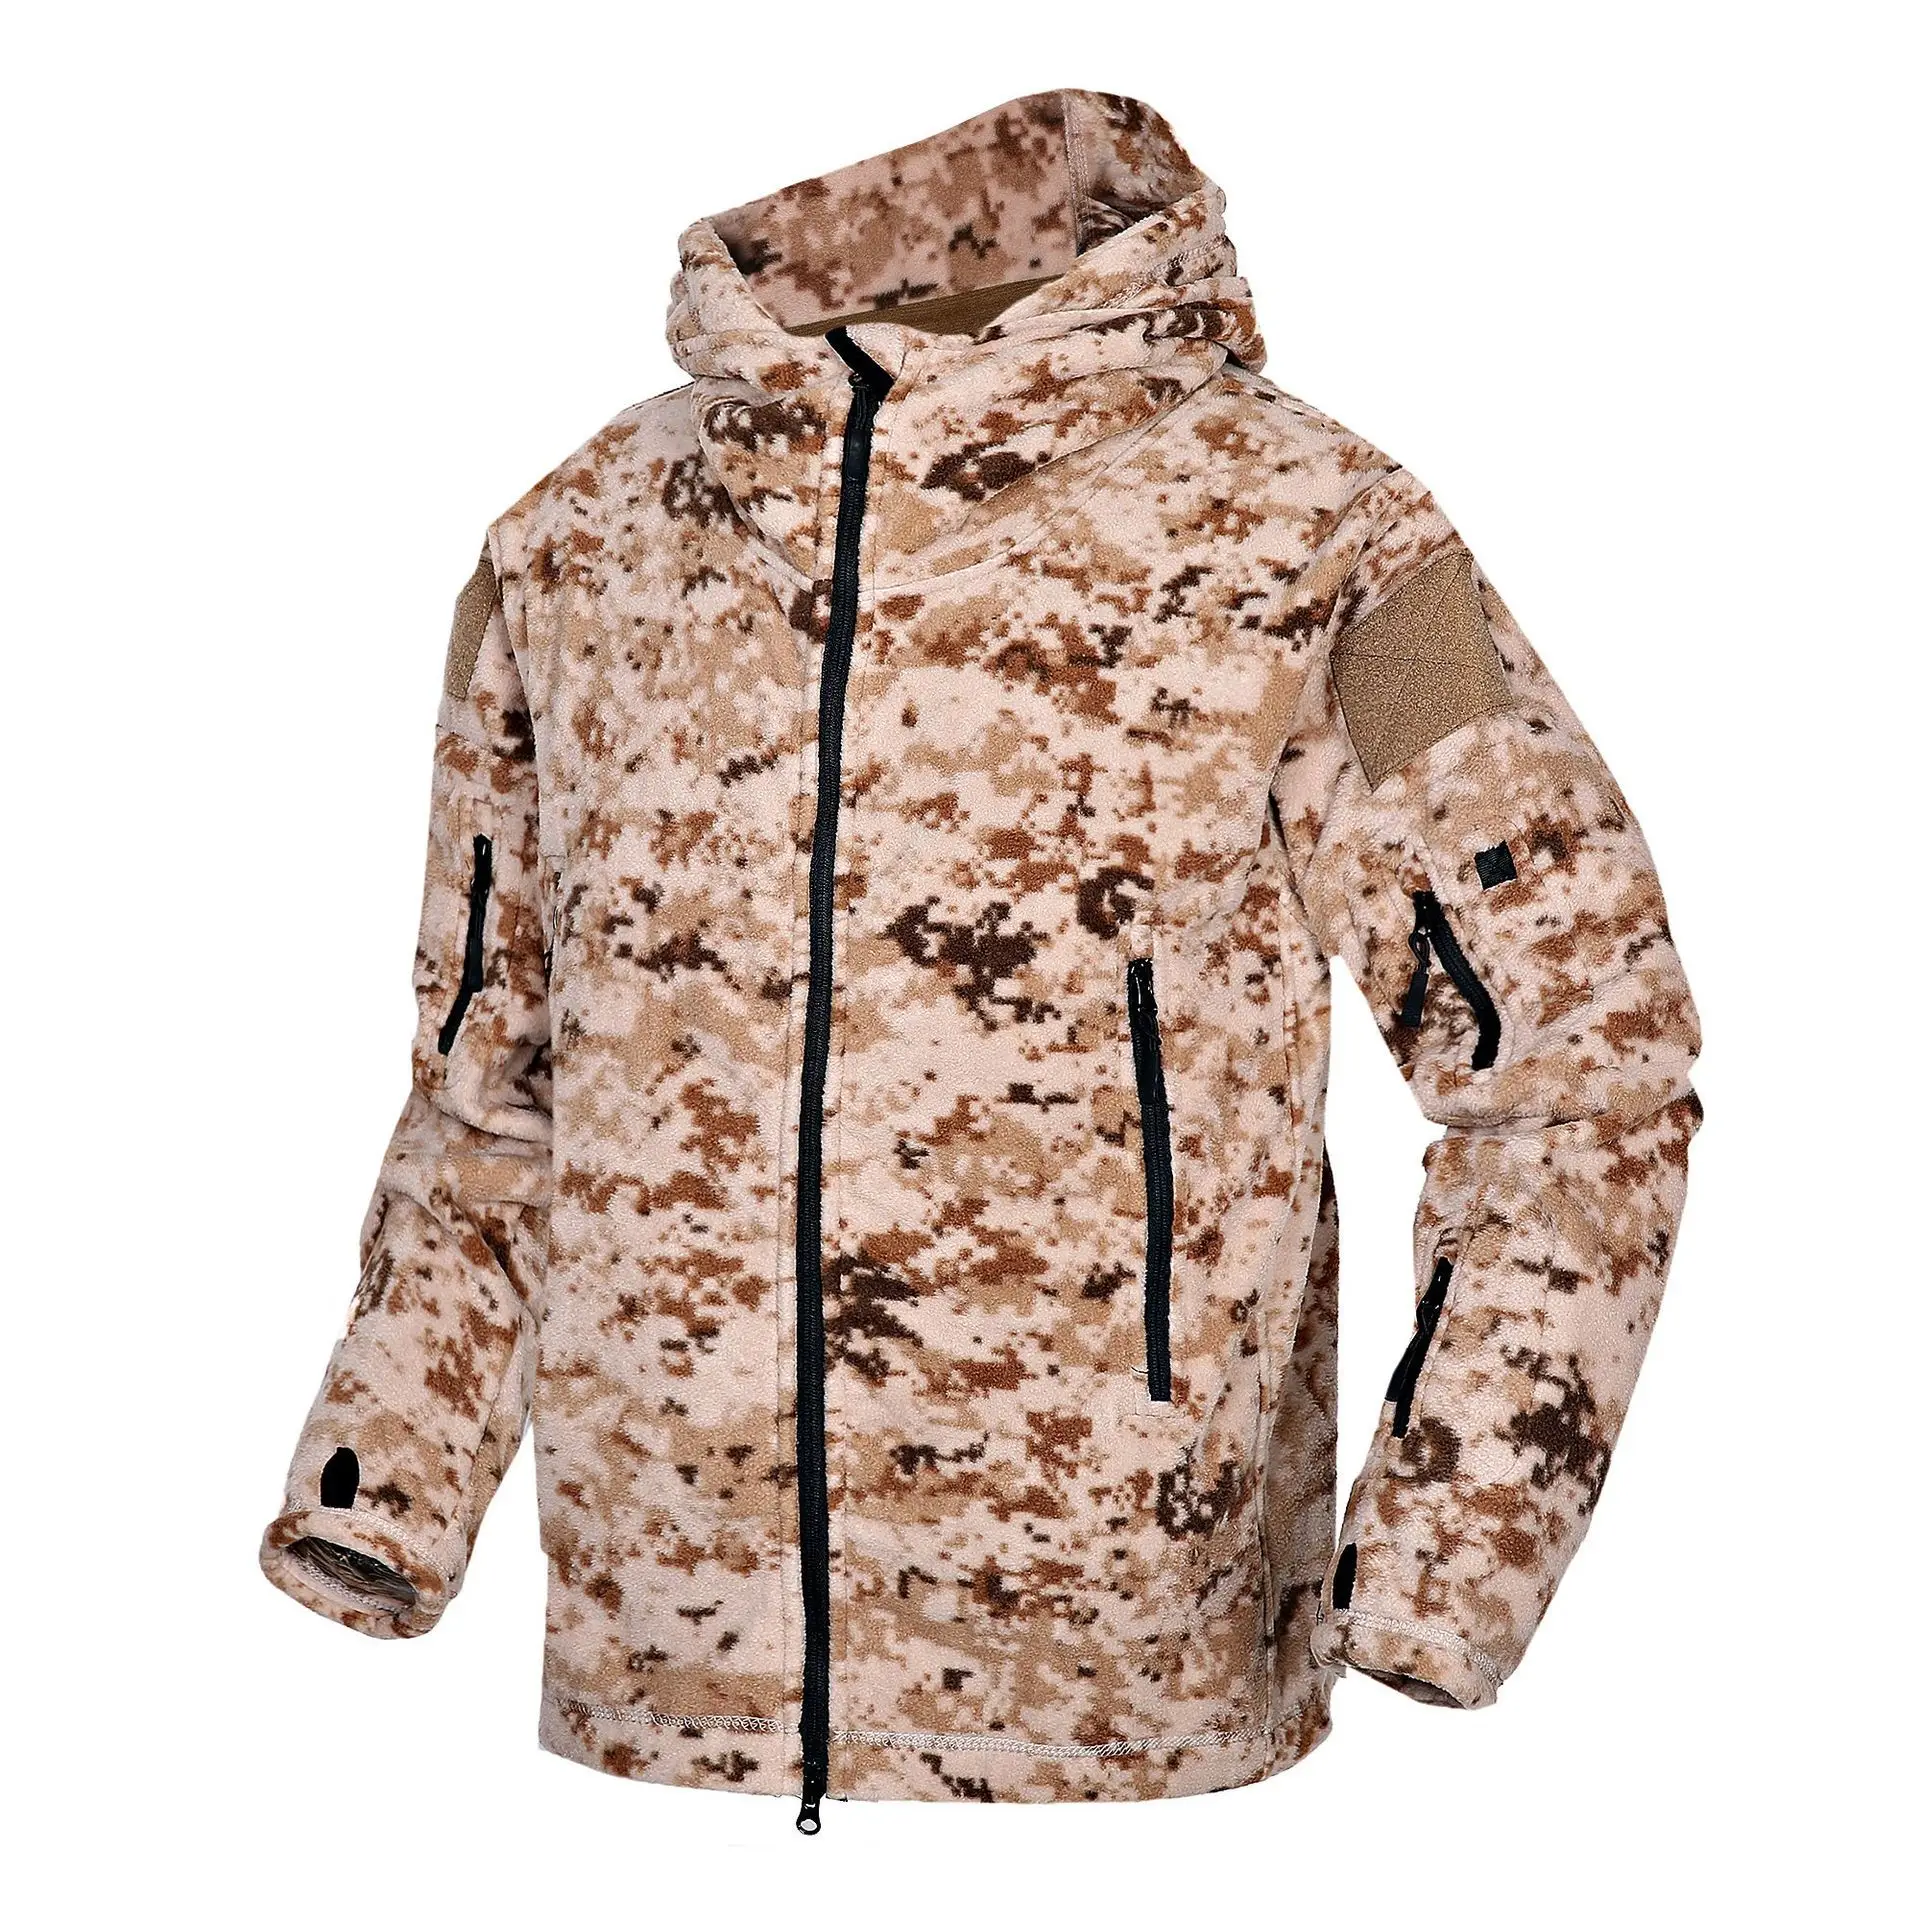 Уличная спортивная теплая камуфляжная тактическая куртка зимняя мужская походная велосипедная армейская тренировочная мягкая оболочка Тепловая флисовая куртка с капюшоном